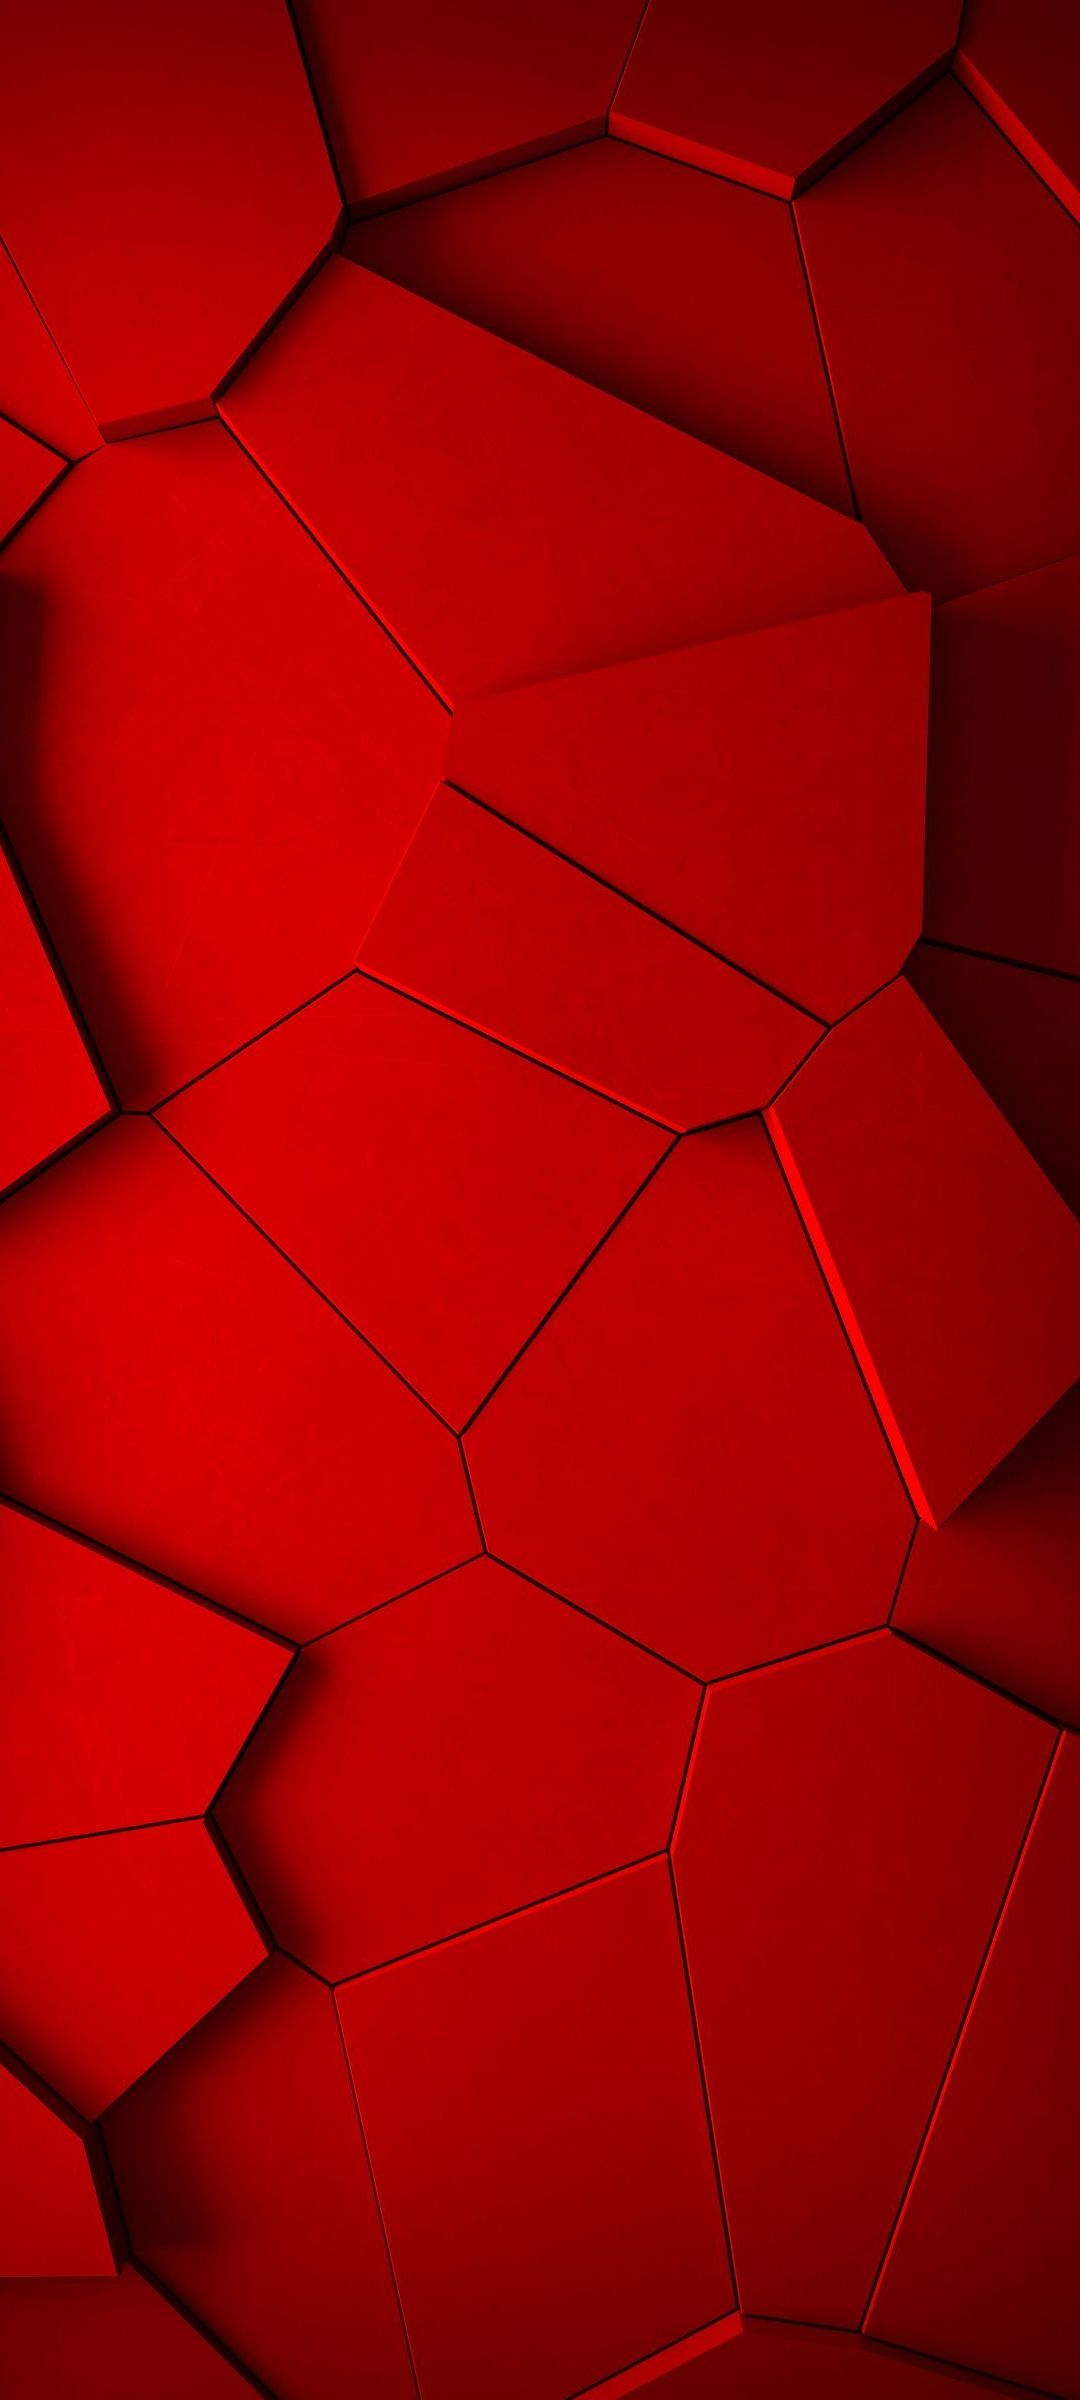 赤いひび割れた地面のようなテクスチャー Redmi Note 9s 壁紙 待ち受け スマラン